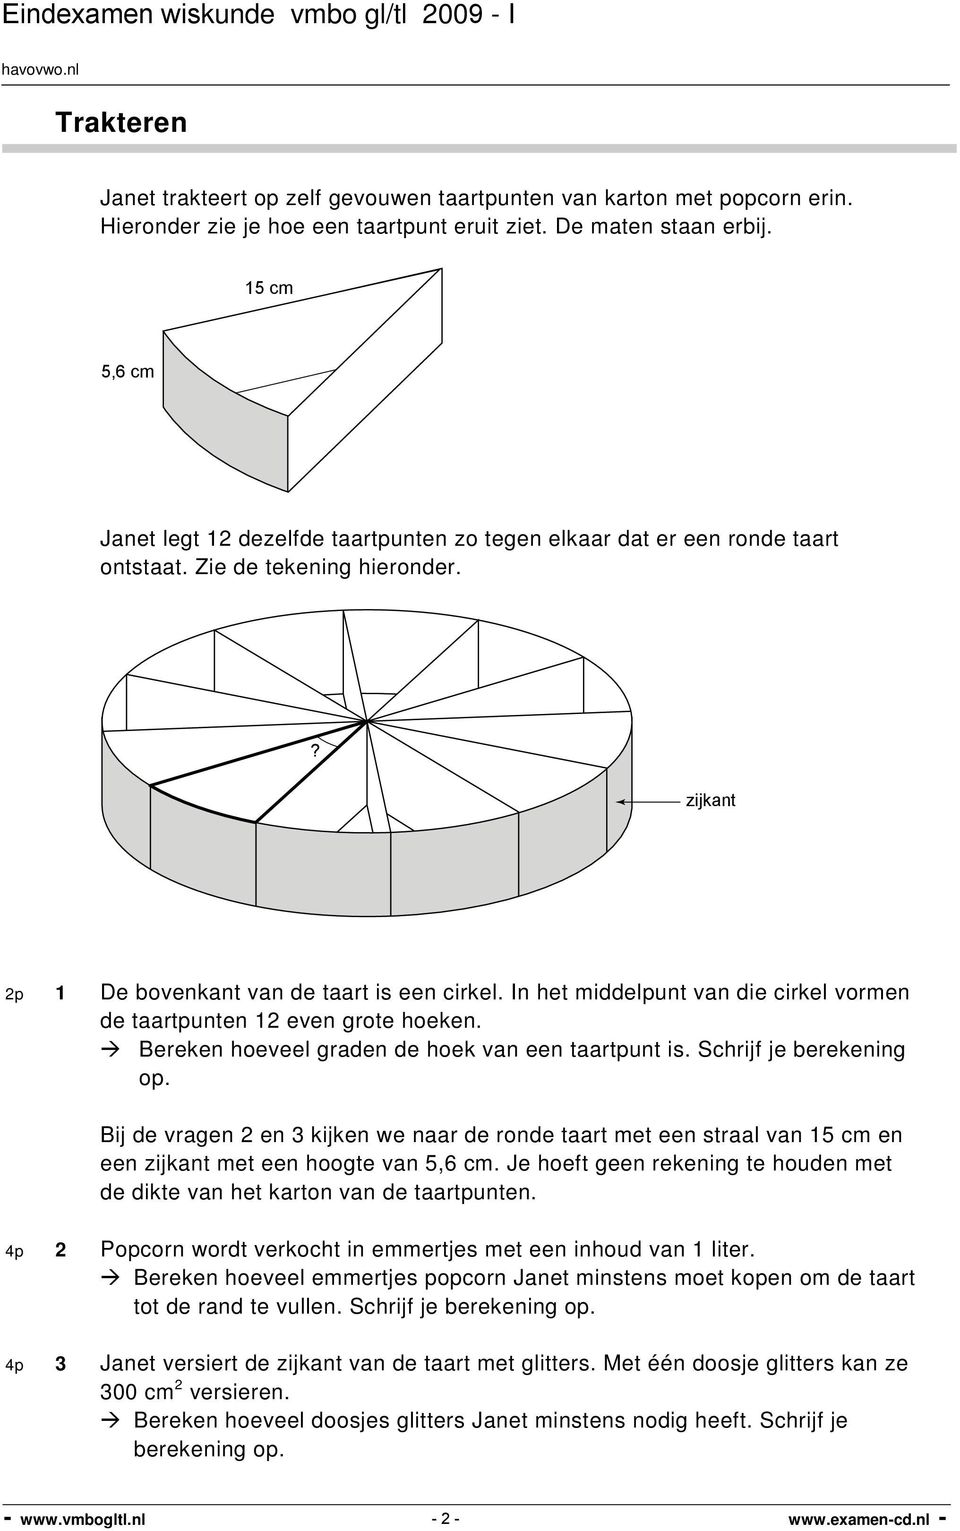 In het middelpunt van die cirkel vormen de taartpunten 12 even grote hoeken. Bereken hoeveel graden de hoek van een taartpunt is. Schrijf je berekening op.